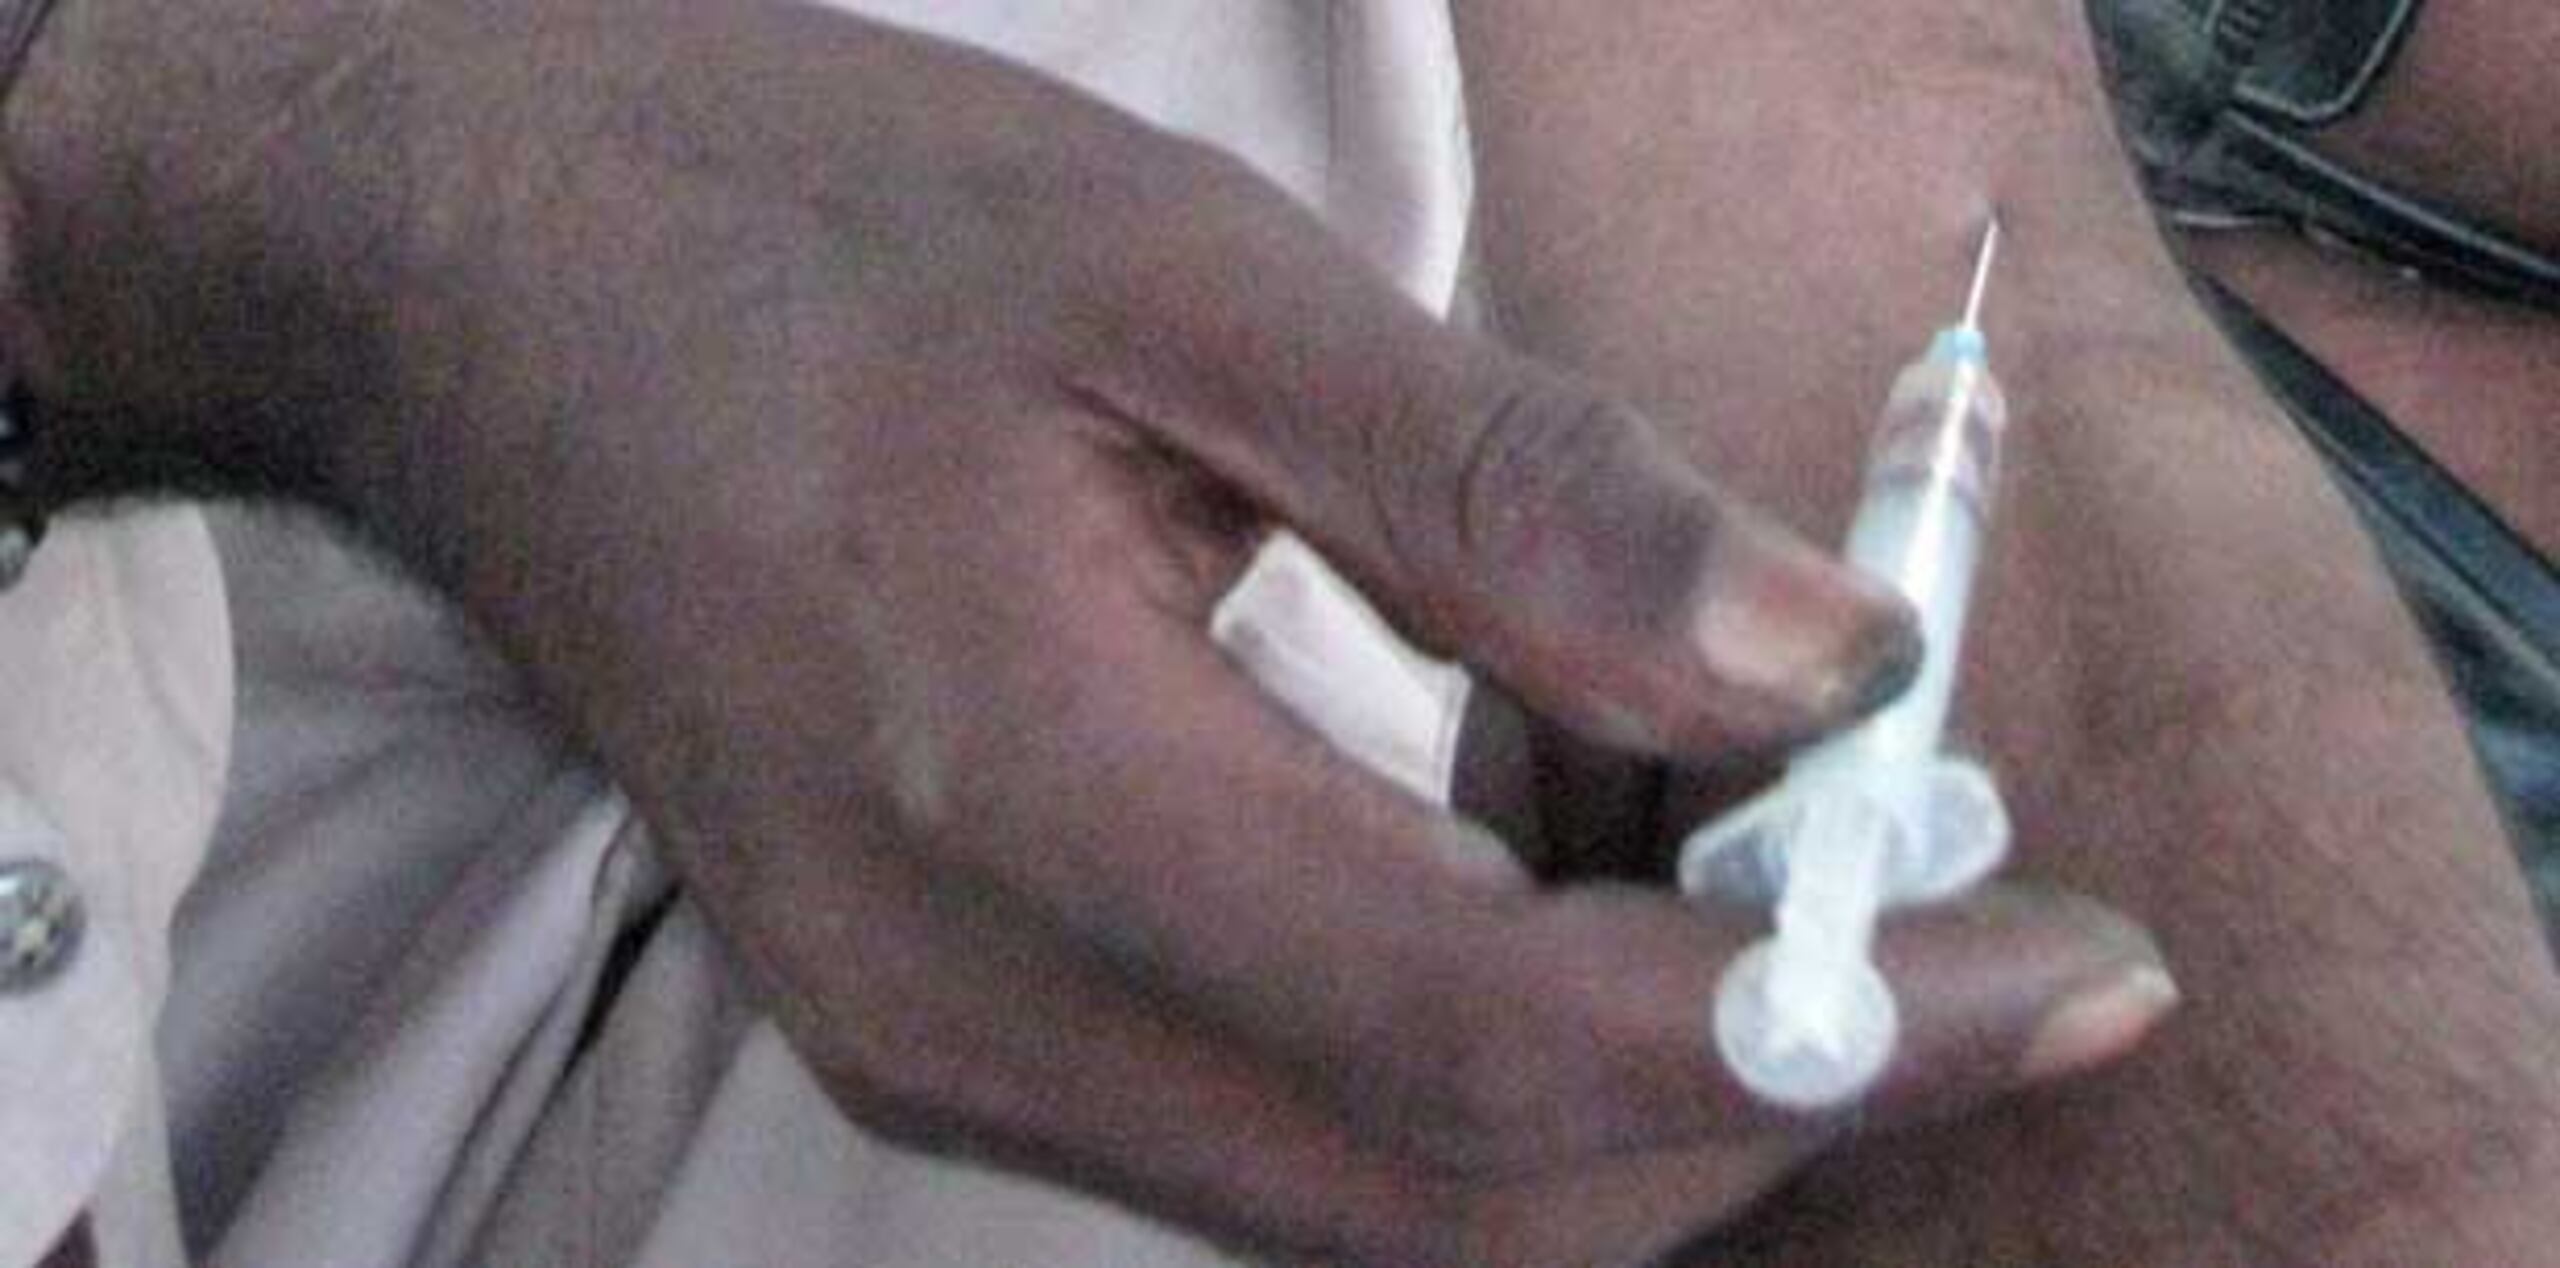 Los programas de intercambio de jeringas proveen a los drogadictos jeringas estériles y recogen las usadas para ayudar a prevenir la diseminación de enfermedades. (Archivo)